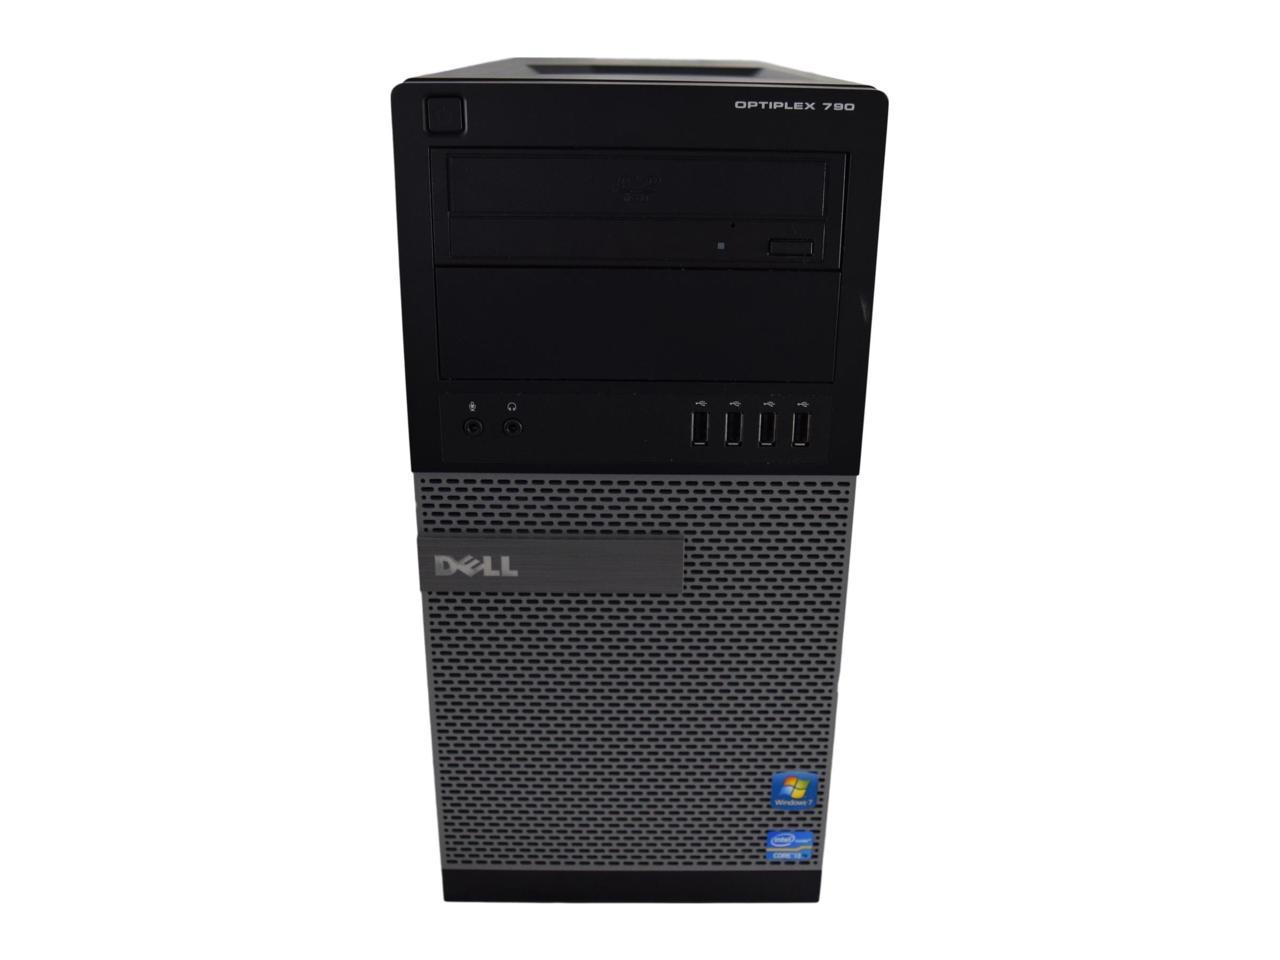 Dell Optiplex 790 MT PC - Intel Core i5 2400 2nd Gen 3.1 GHz 8GB 500GB HDD DVD-RW Windows 10 Pro 64-Bit